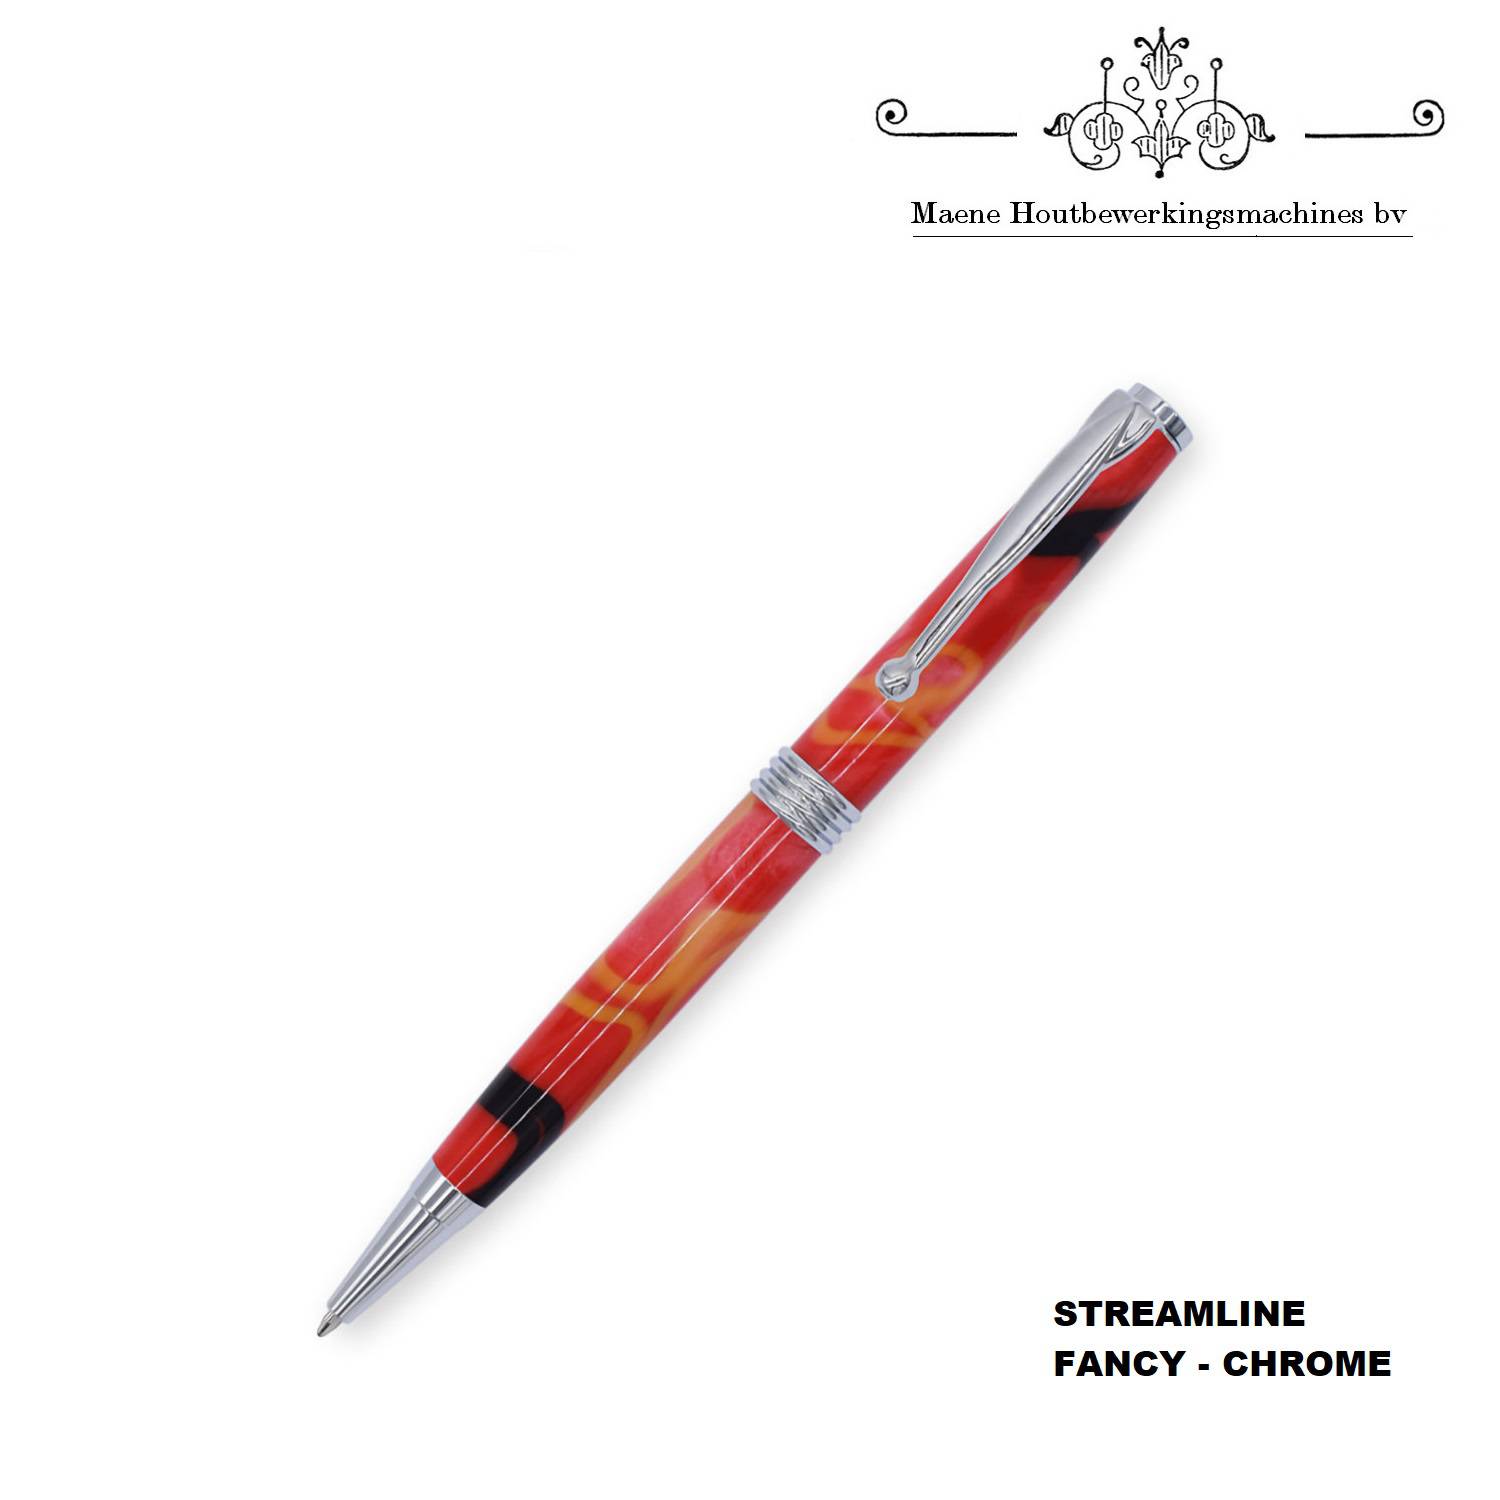 streamline-fancy-chrome-pen-kit